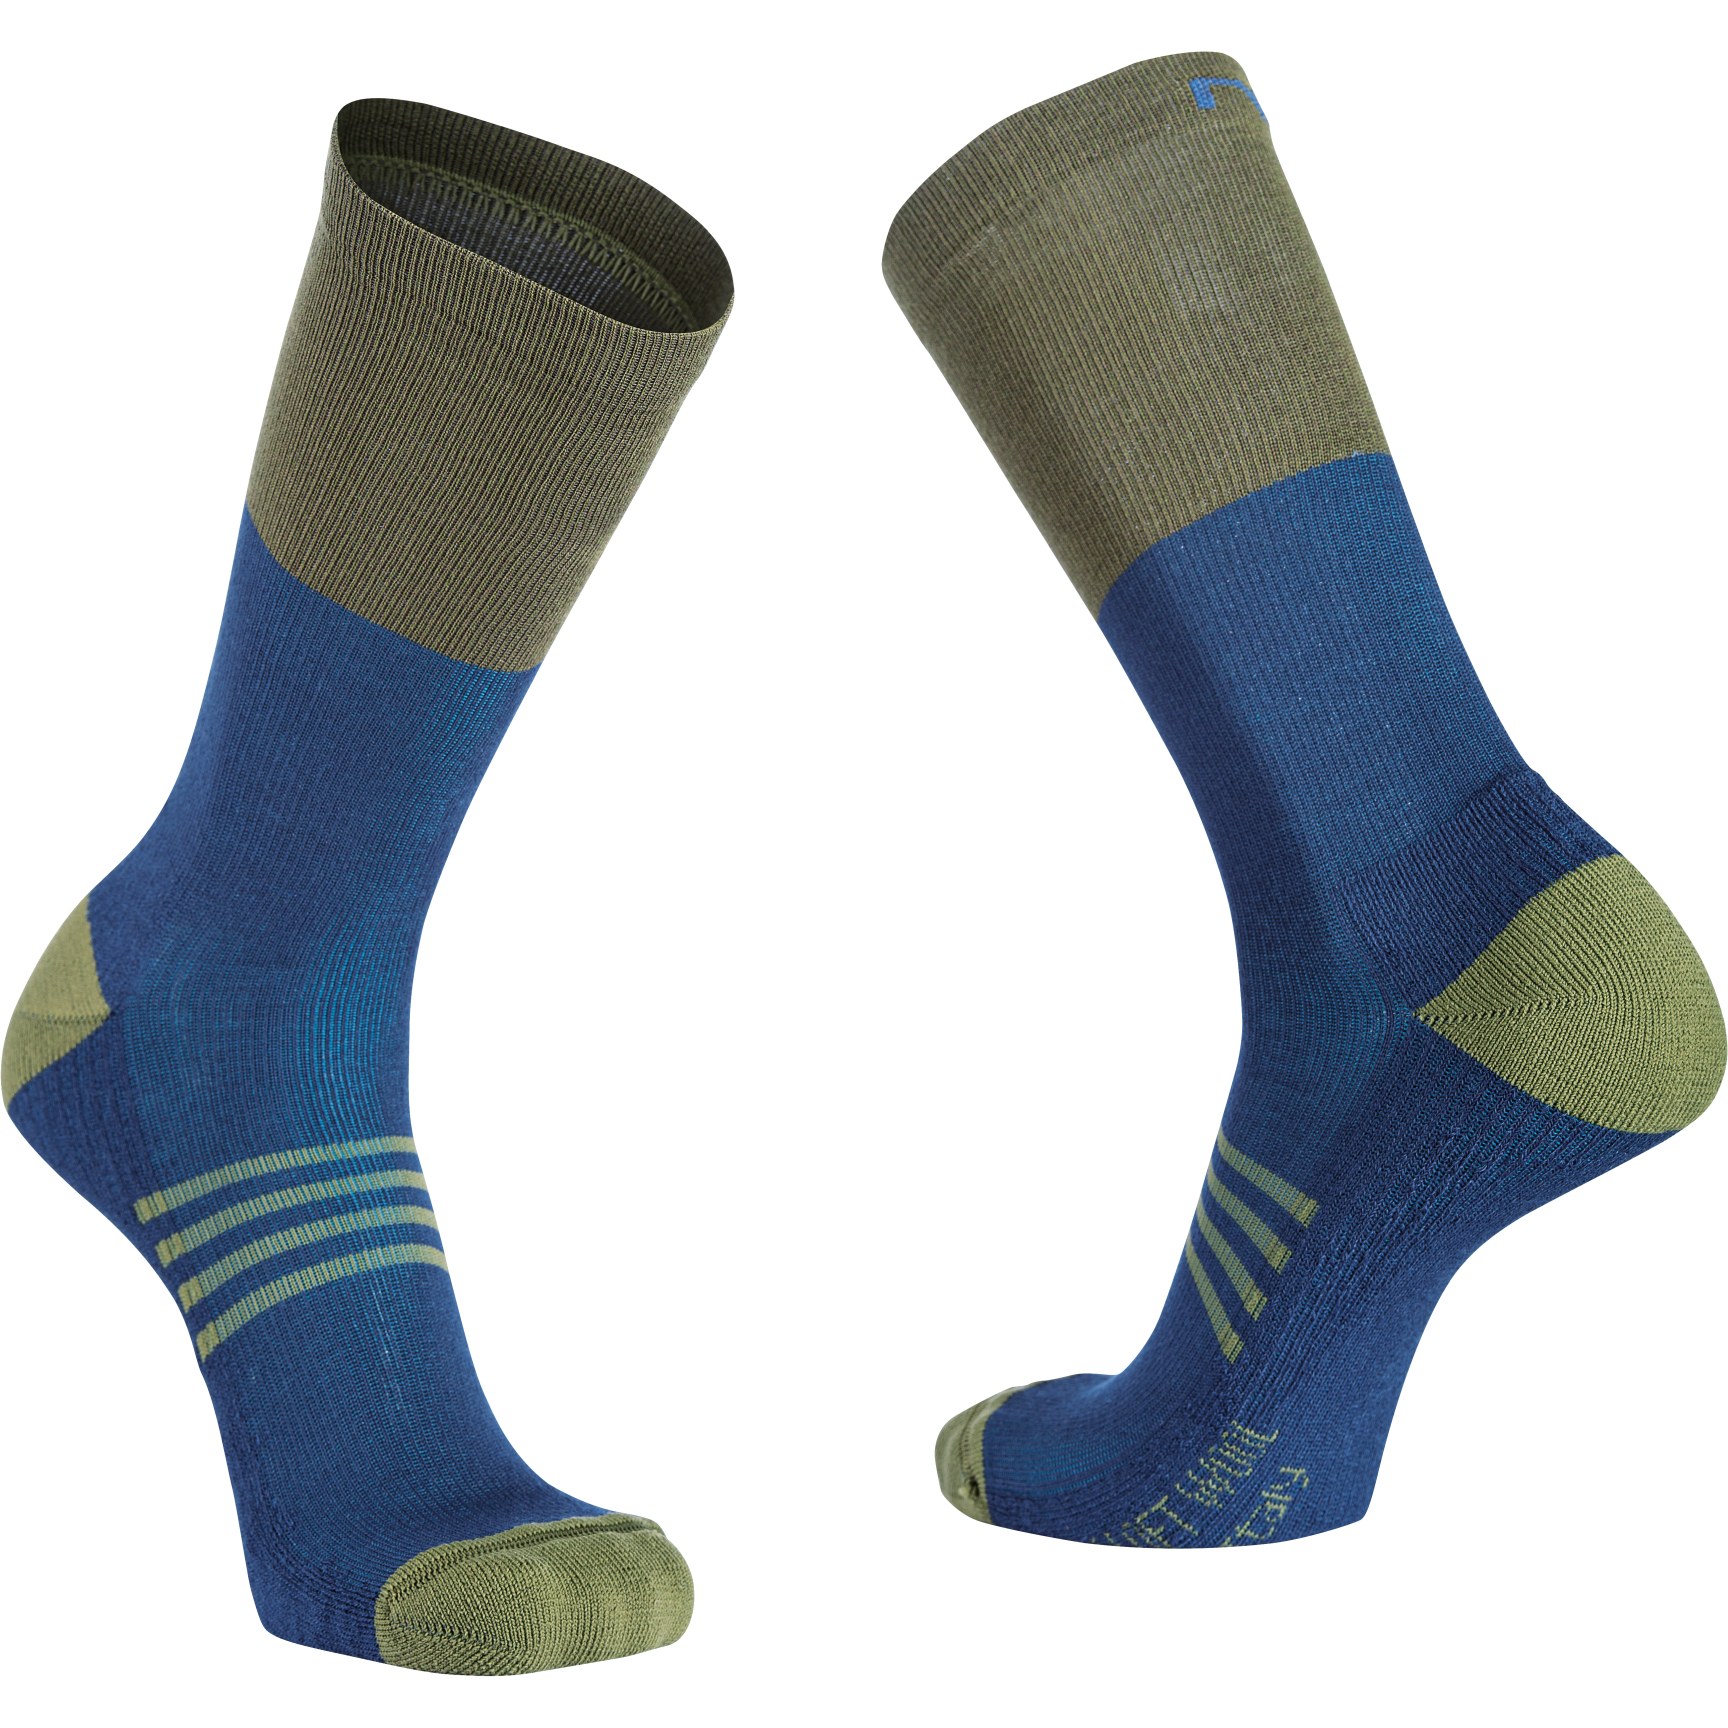 Produktbild von Northwave Extreme Pro High Socken - deep blue/forest green 27